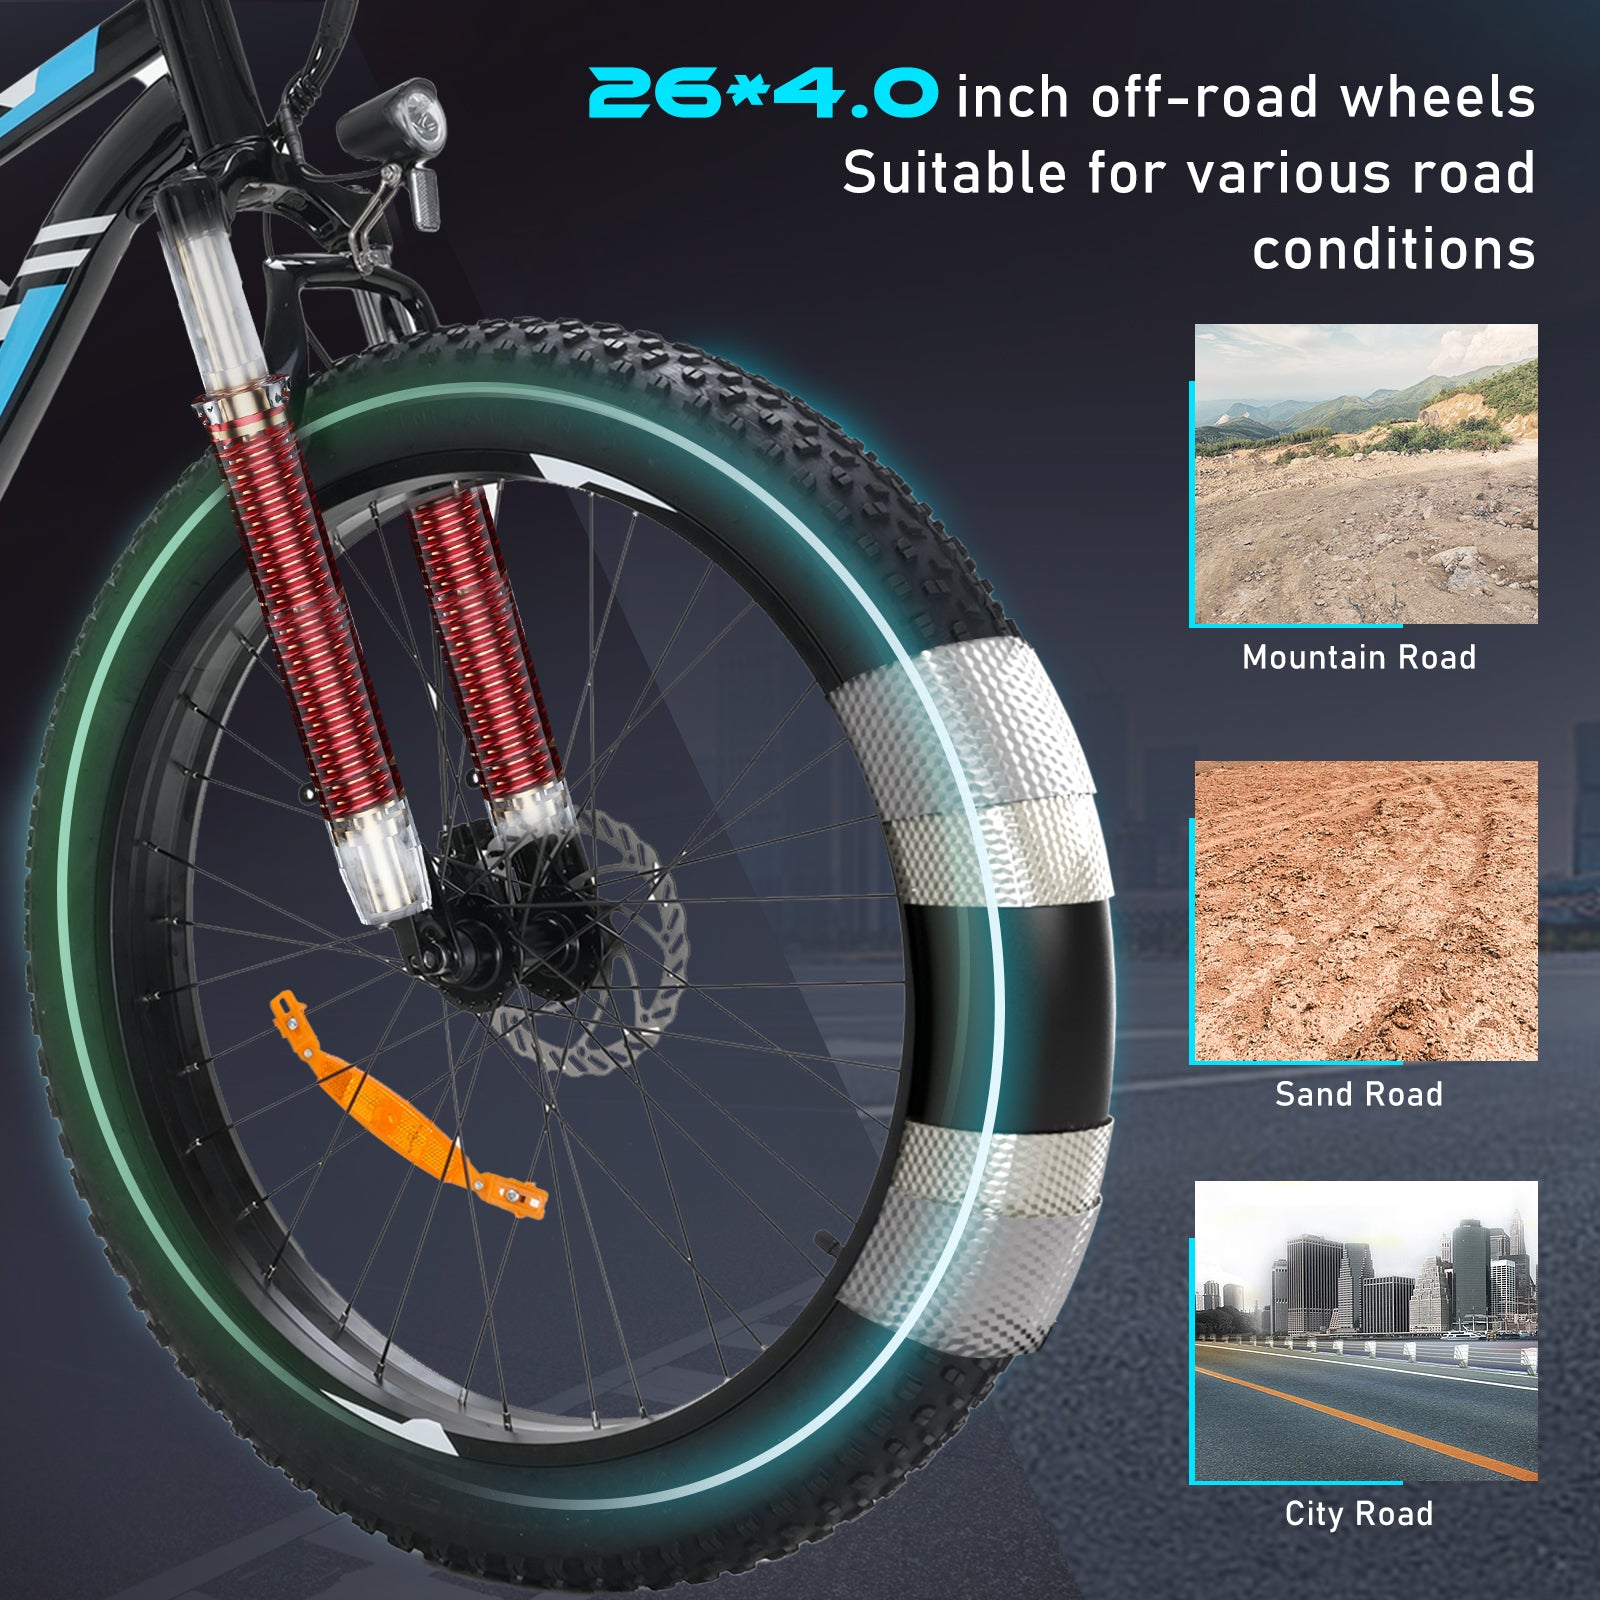 Bicicleta eléctrica con neumáticos gruesos BK15 4.0